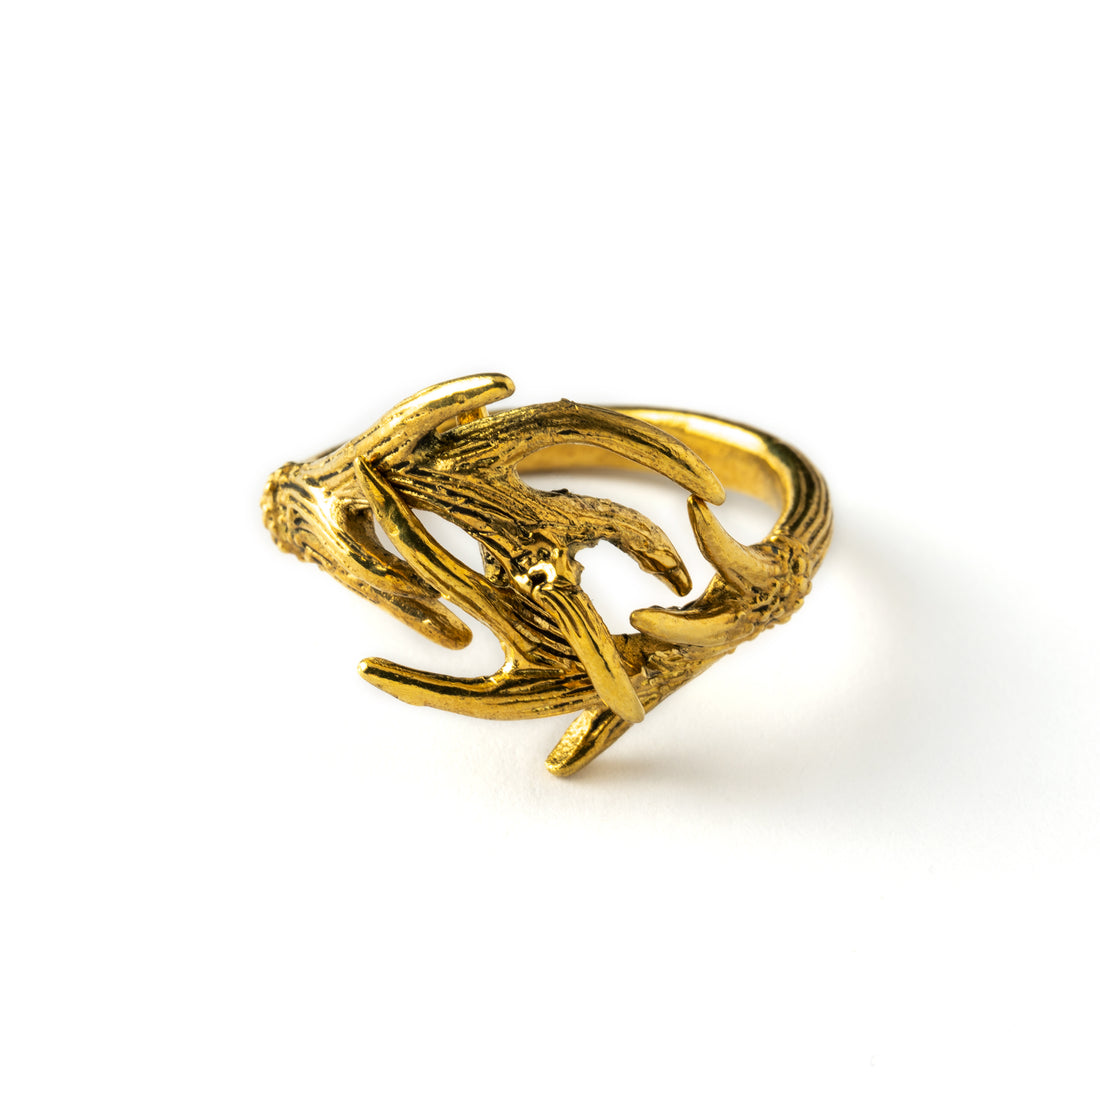 Golden-antler-horn-ring